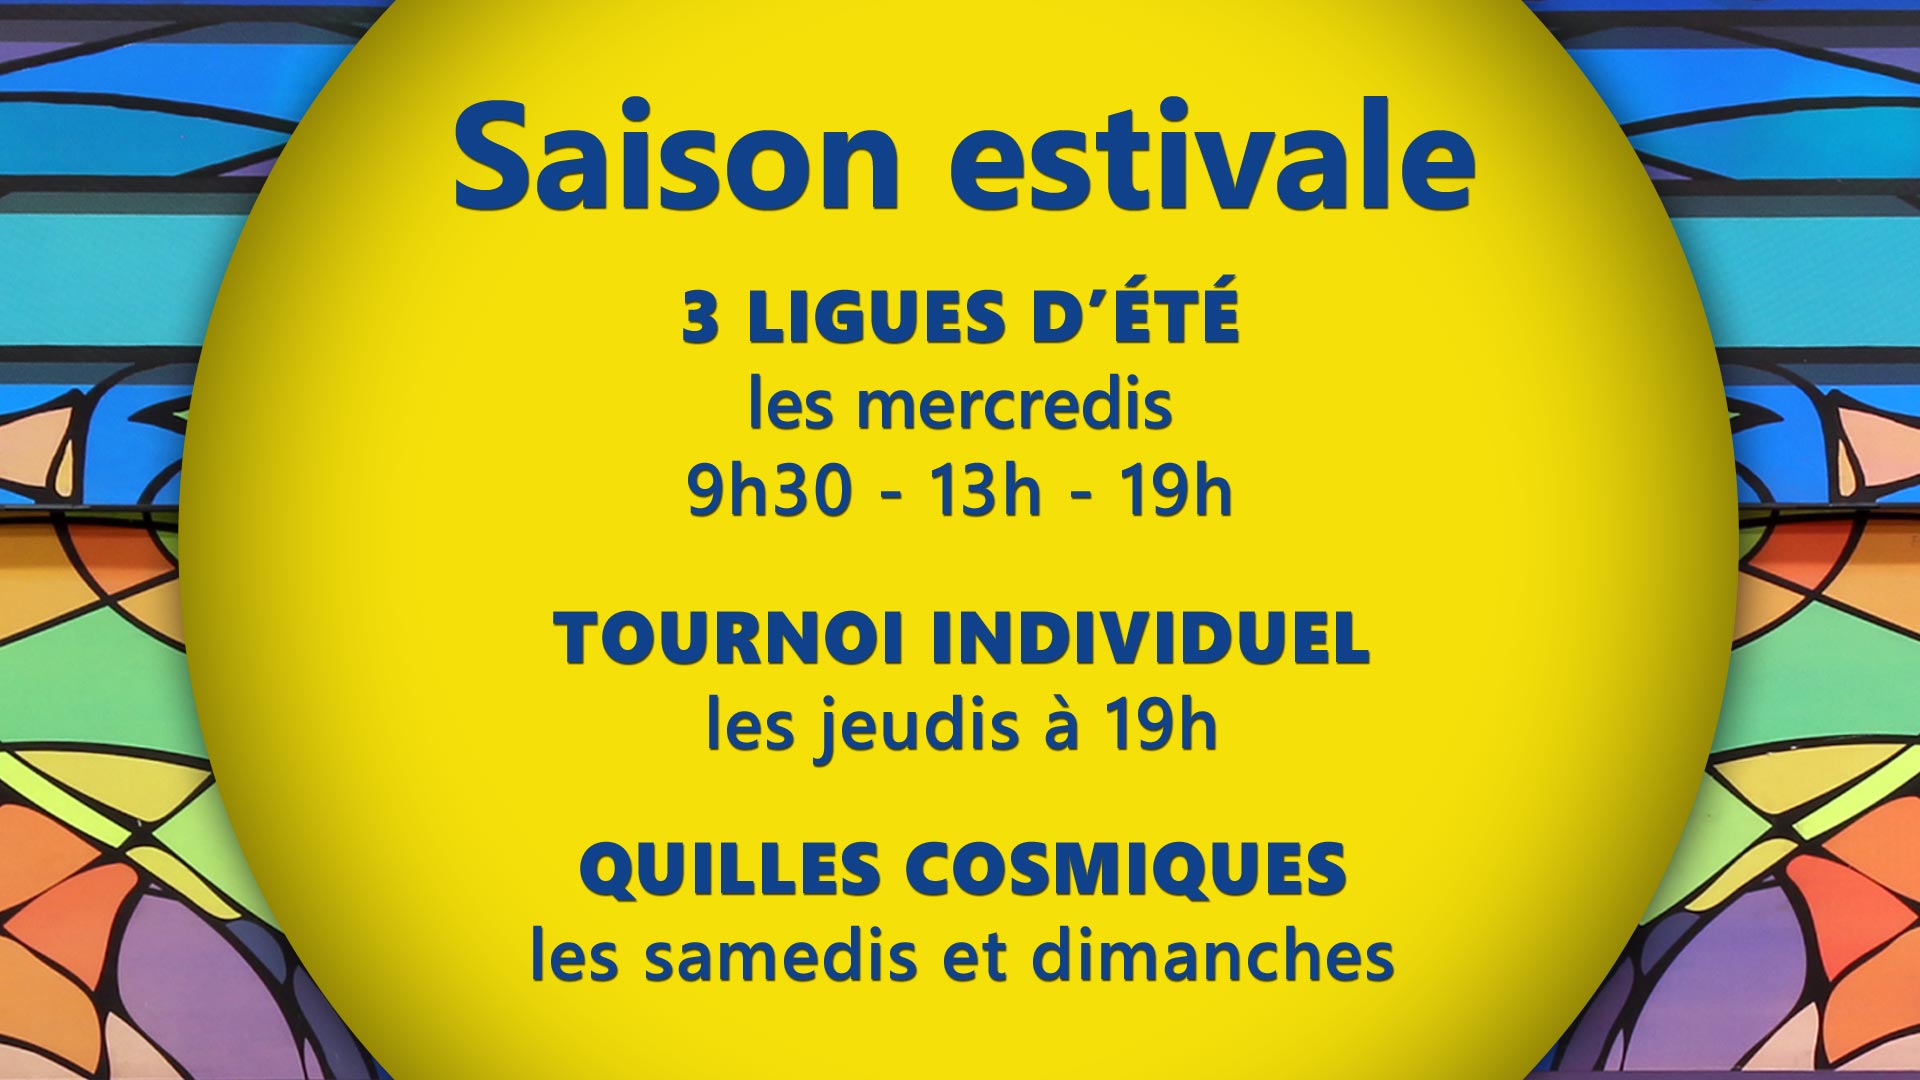 Saison estivale du Salon de quilles St-Pascal de Québec